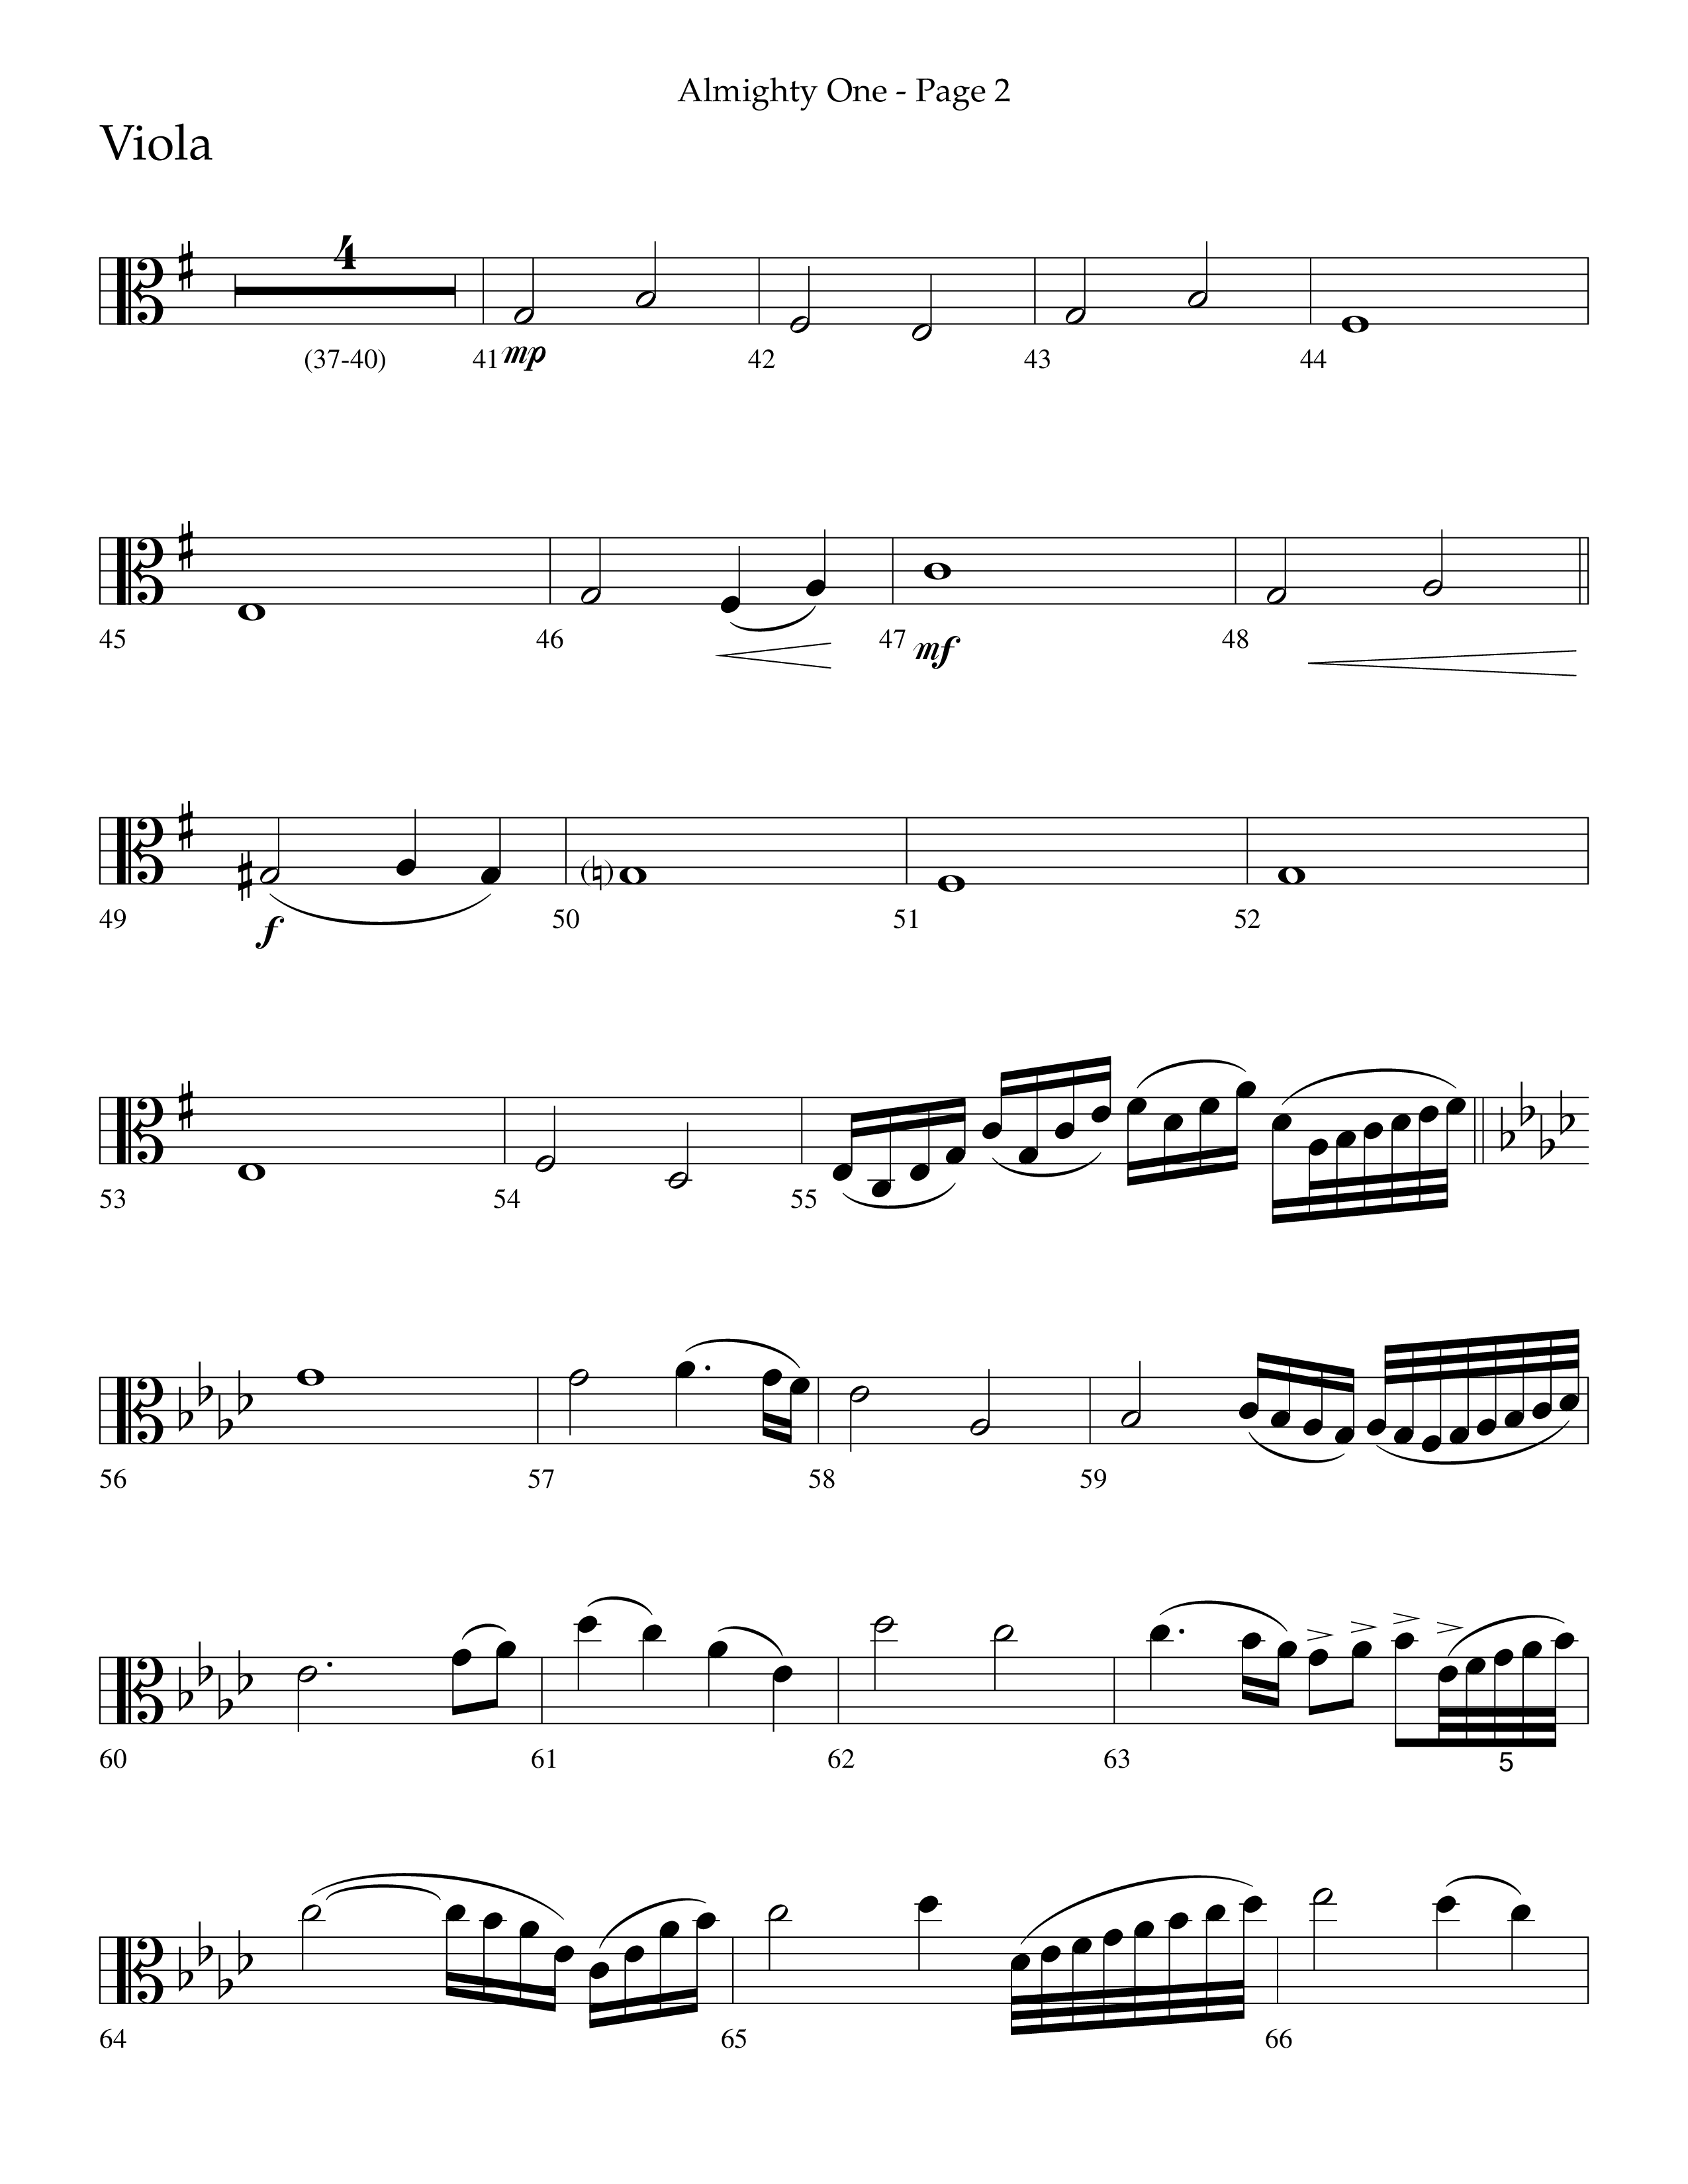 Almighty One (Choral Anthem SATB) Viola (Lifeway Choral / Arr. Bradley Knight)